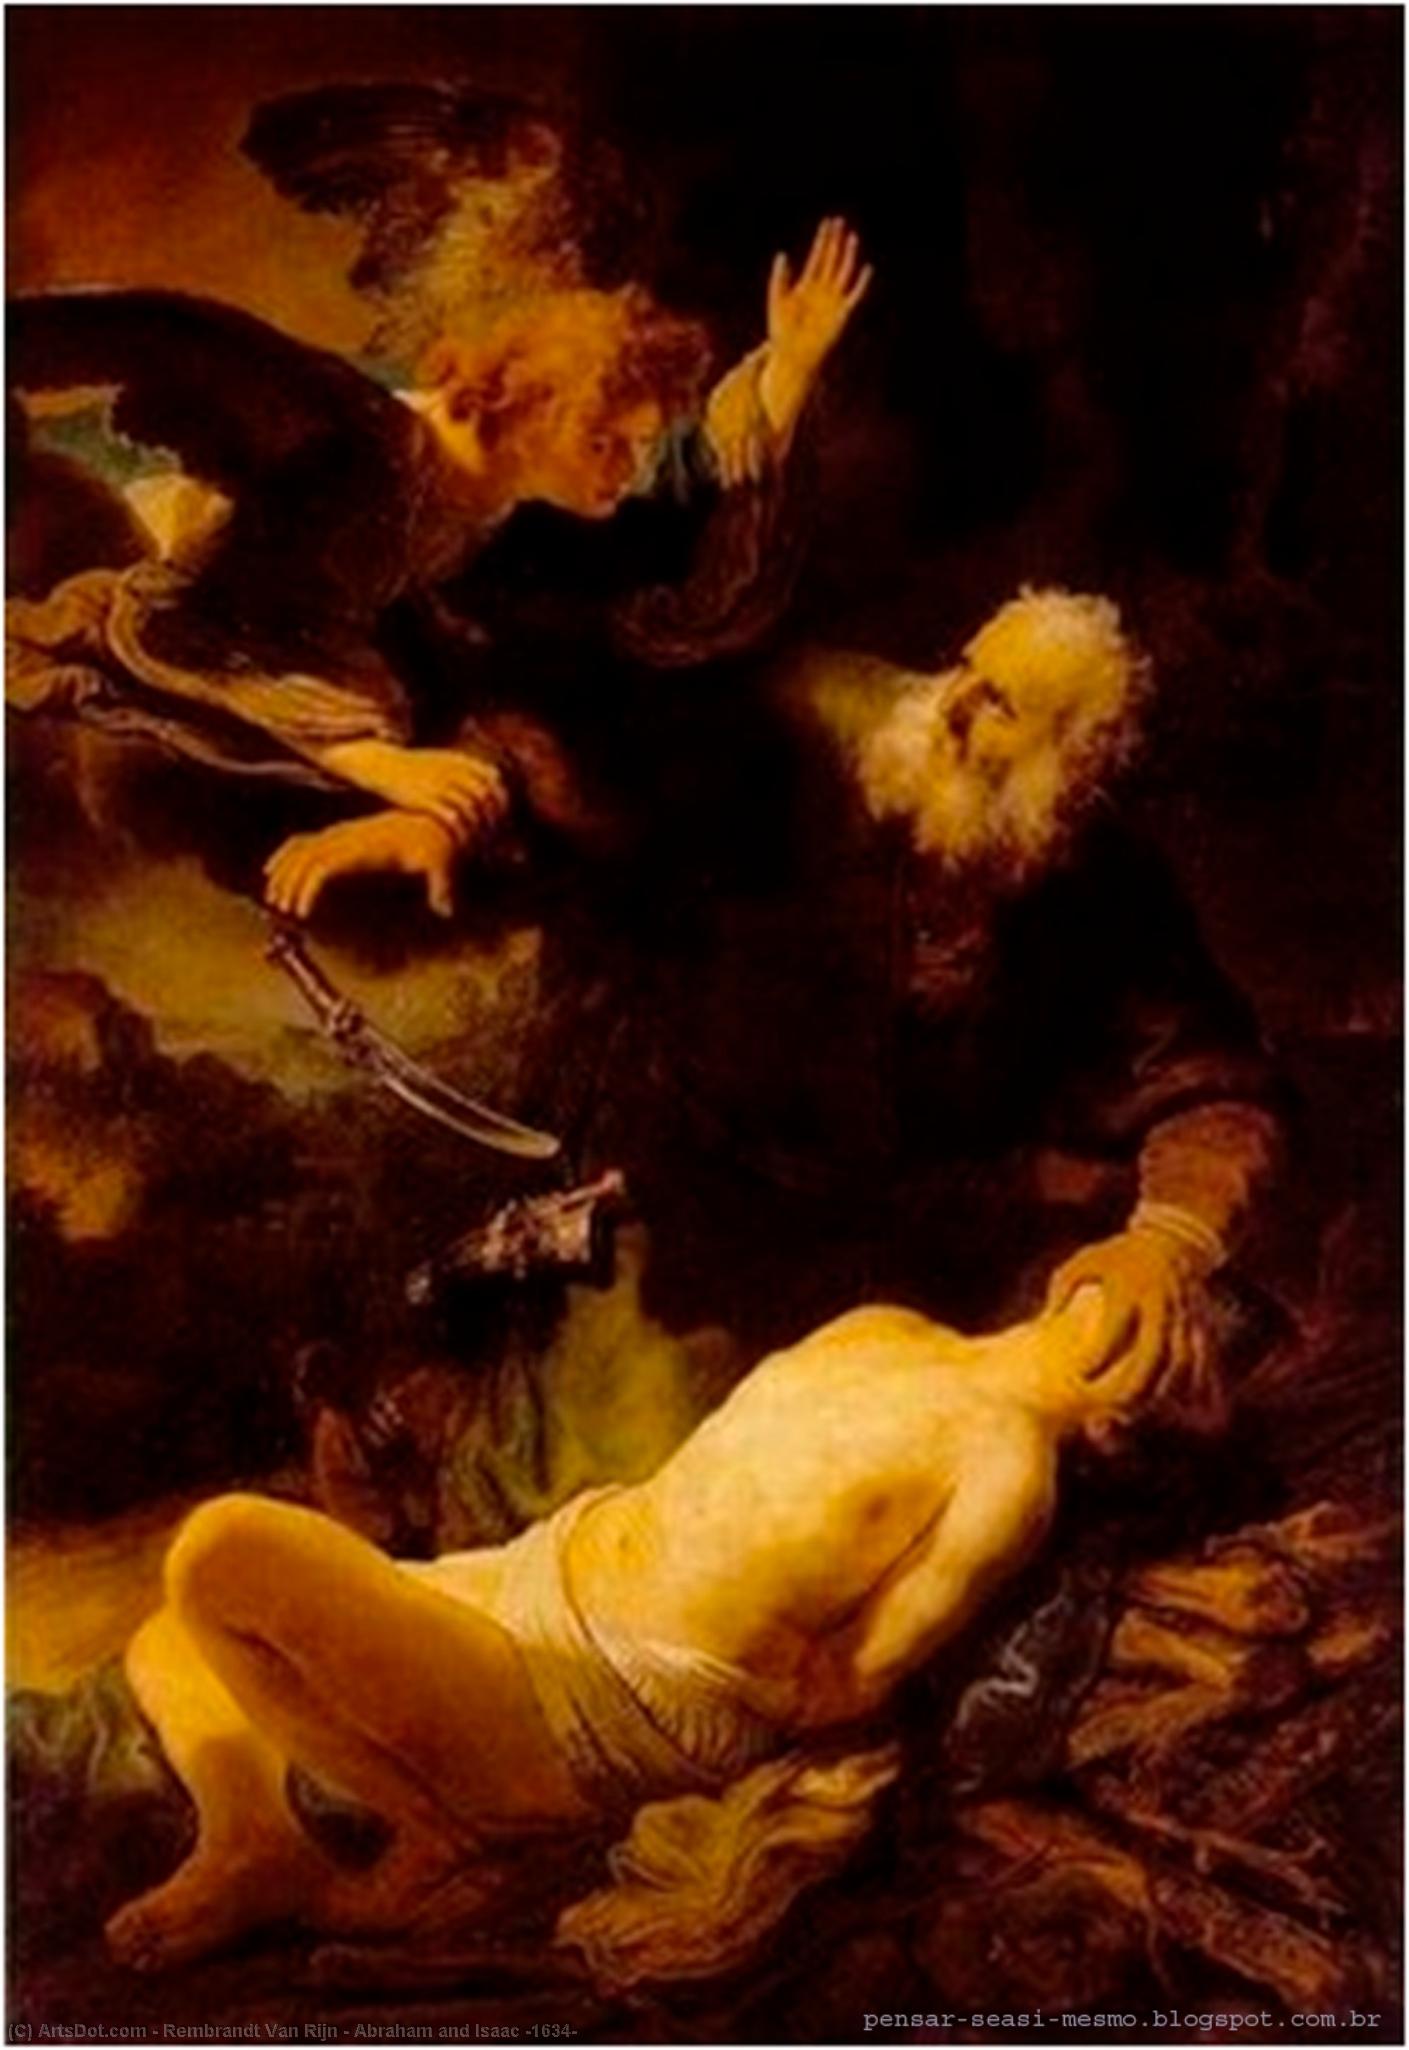 Wikioo.org - Bách khoa toàn thư về mỹ thuật - Vẽ tranh, Tác phẩm nghệ thuật Rembrandt Van Rijn - Abraham and Isaac [1634]